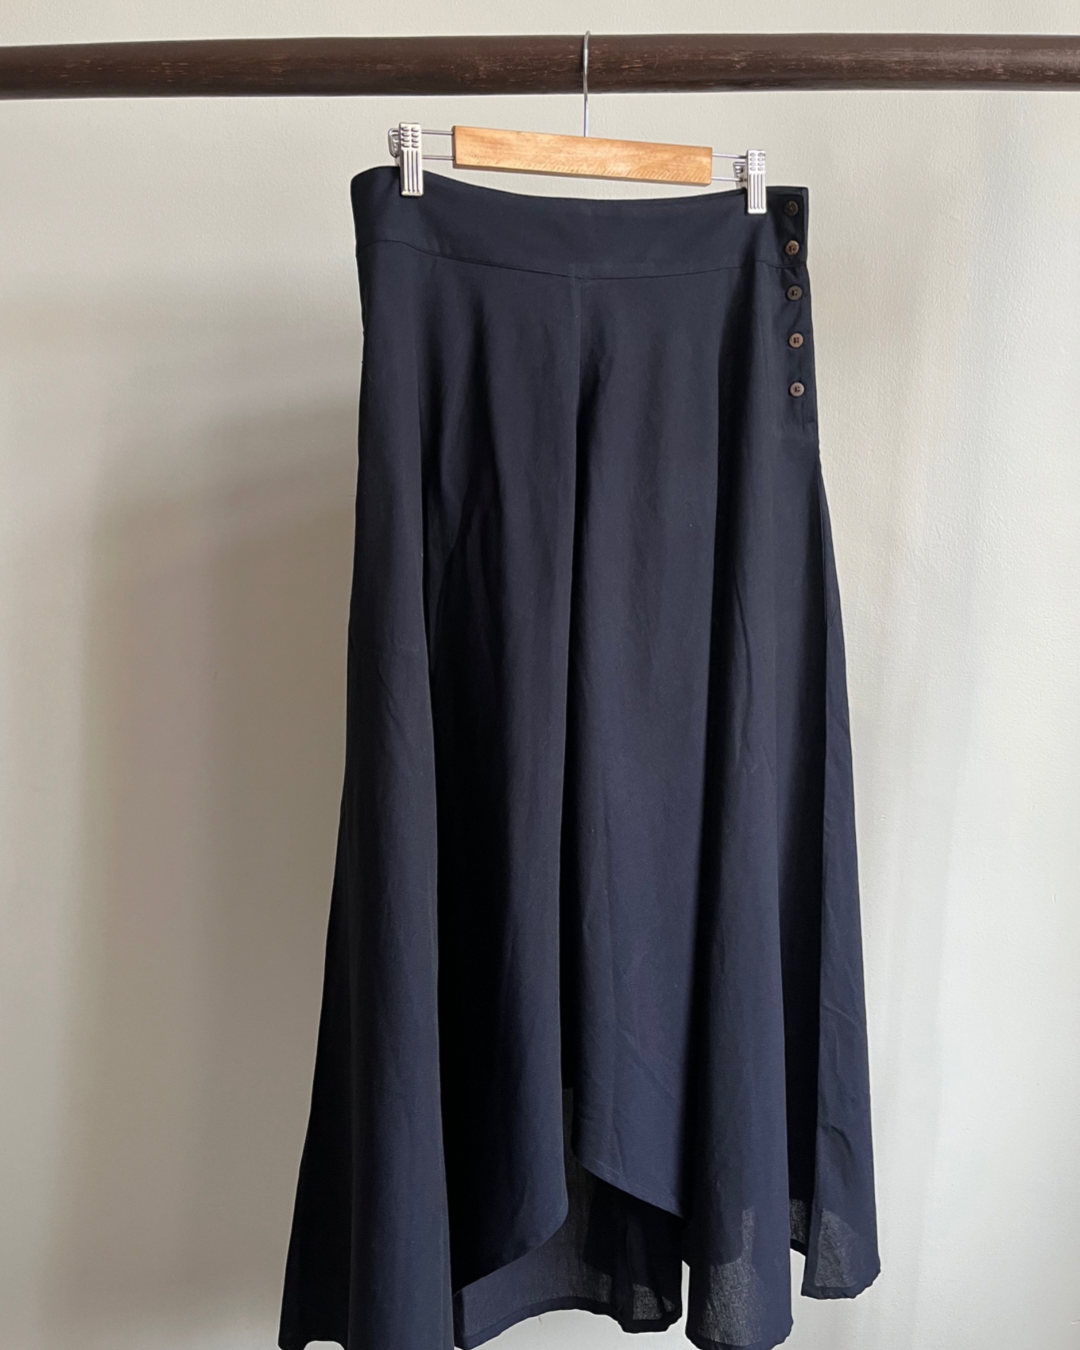 Adhira Skirt  Greyish Blue  Pilgrim